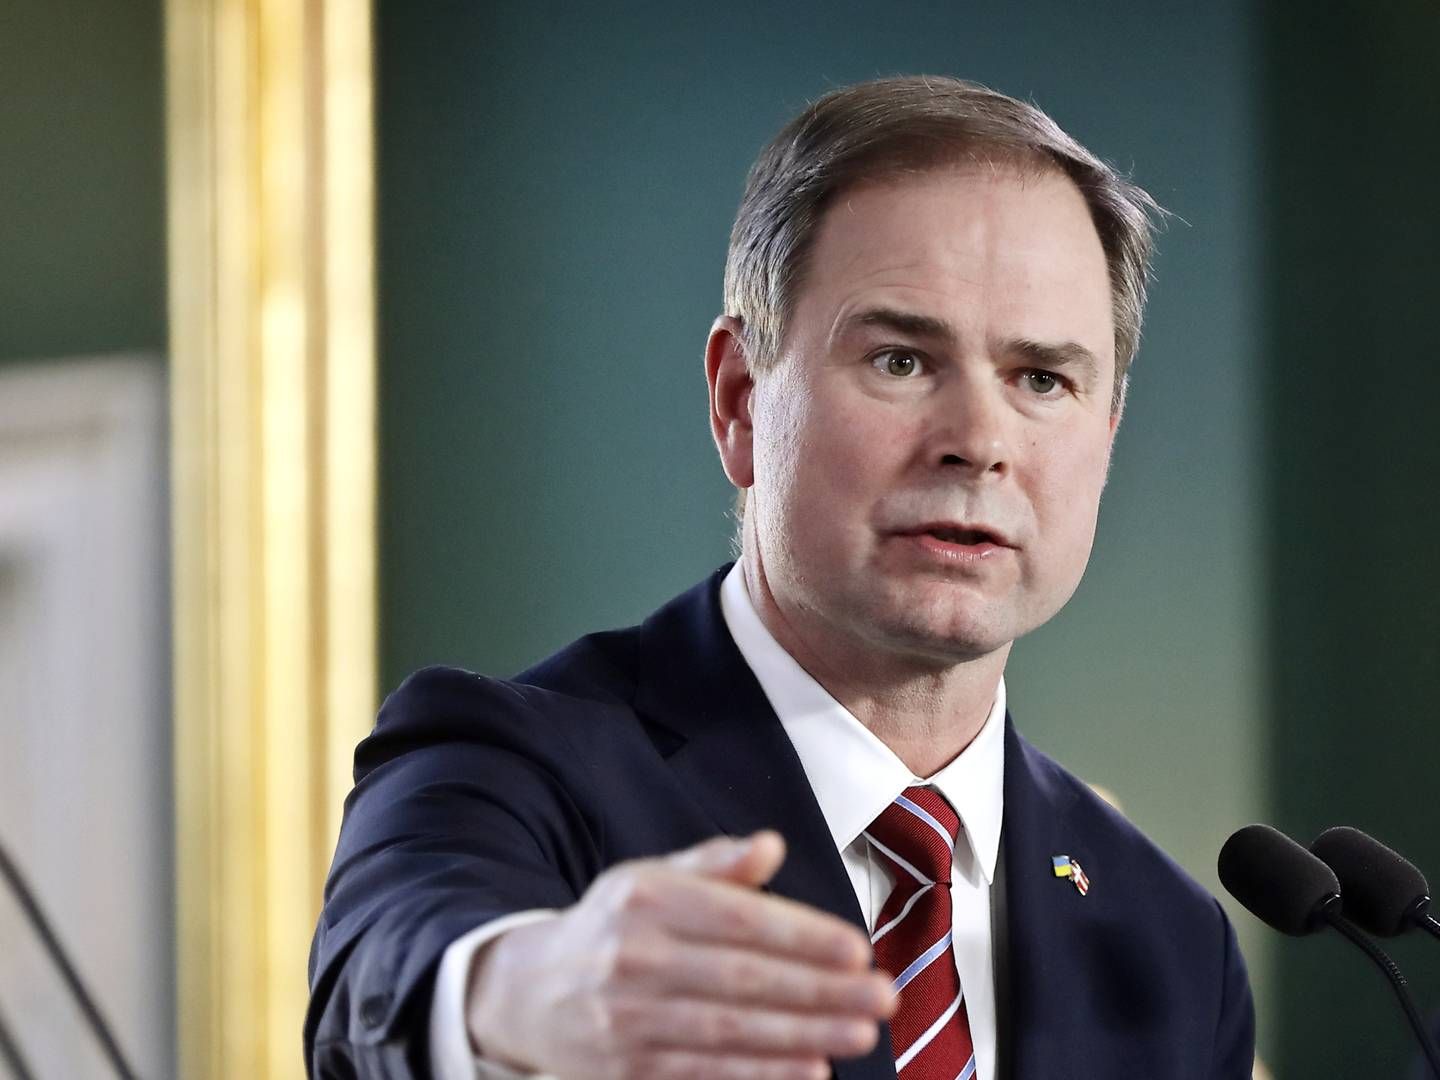 Regeringen og finansminister Nicolai Wammen (S) må give tabt på forslag. | Foto: Jens Dresling